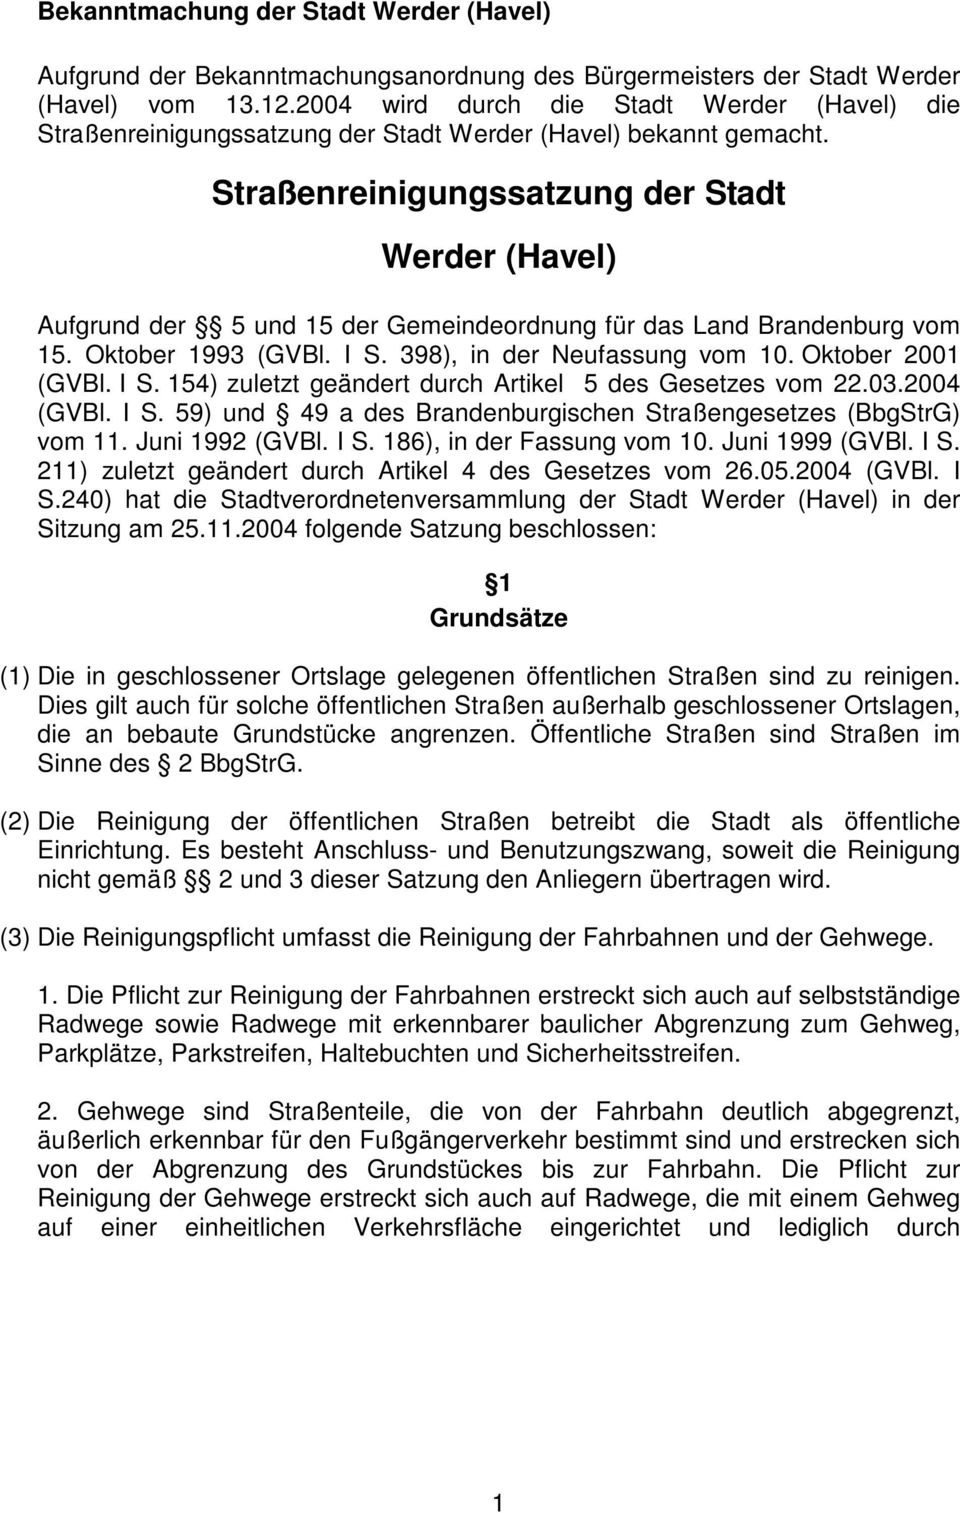 Straßenreinigungssatzung der Stadt Werder (Havel) ufgrund der 5 und 15 der Gemeindeordnung für das Land randenburg vom 15. Oktober 1993 (GVl. I S. 398), in der Neufassung vom 10. Oktober 2001 (GVl.